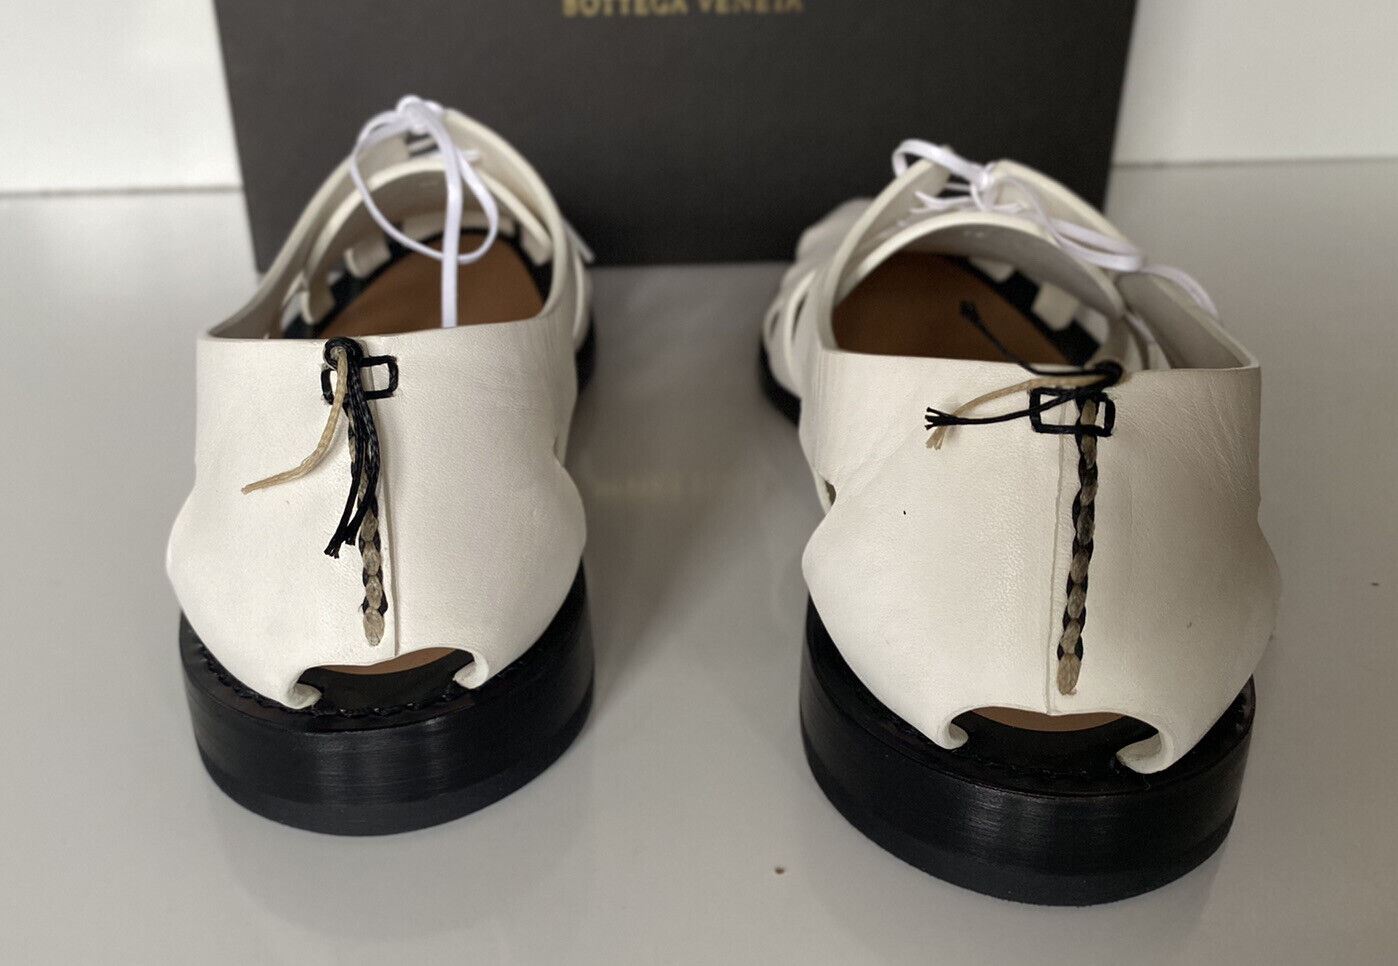 NIB Bottega Veneta Herren Derby Leder Weiße Schuhe Ausschnittdetails 11 US 574829 